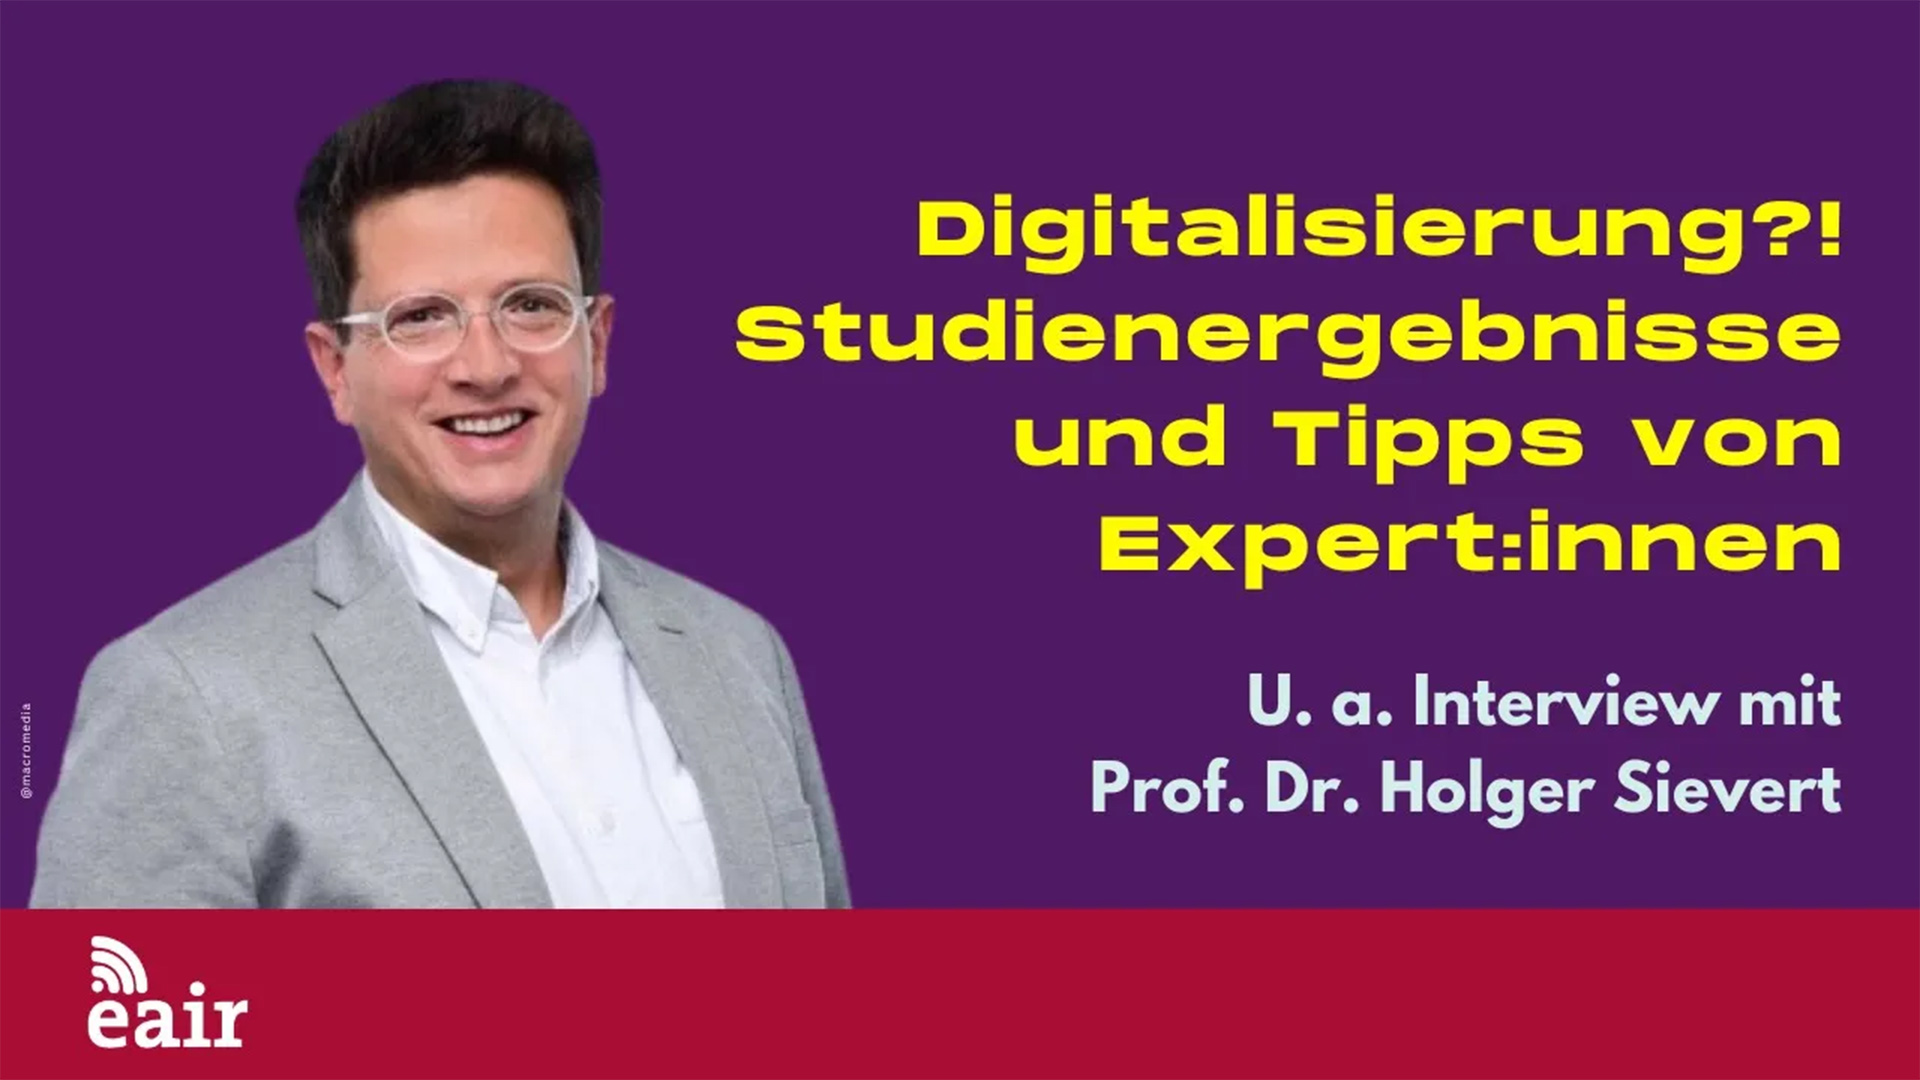 Video-Vorschaubild Prof. Dr. Holger Sievert im Portrait